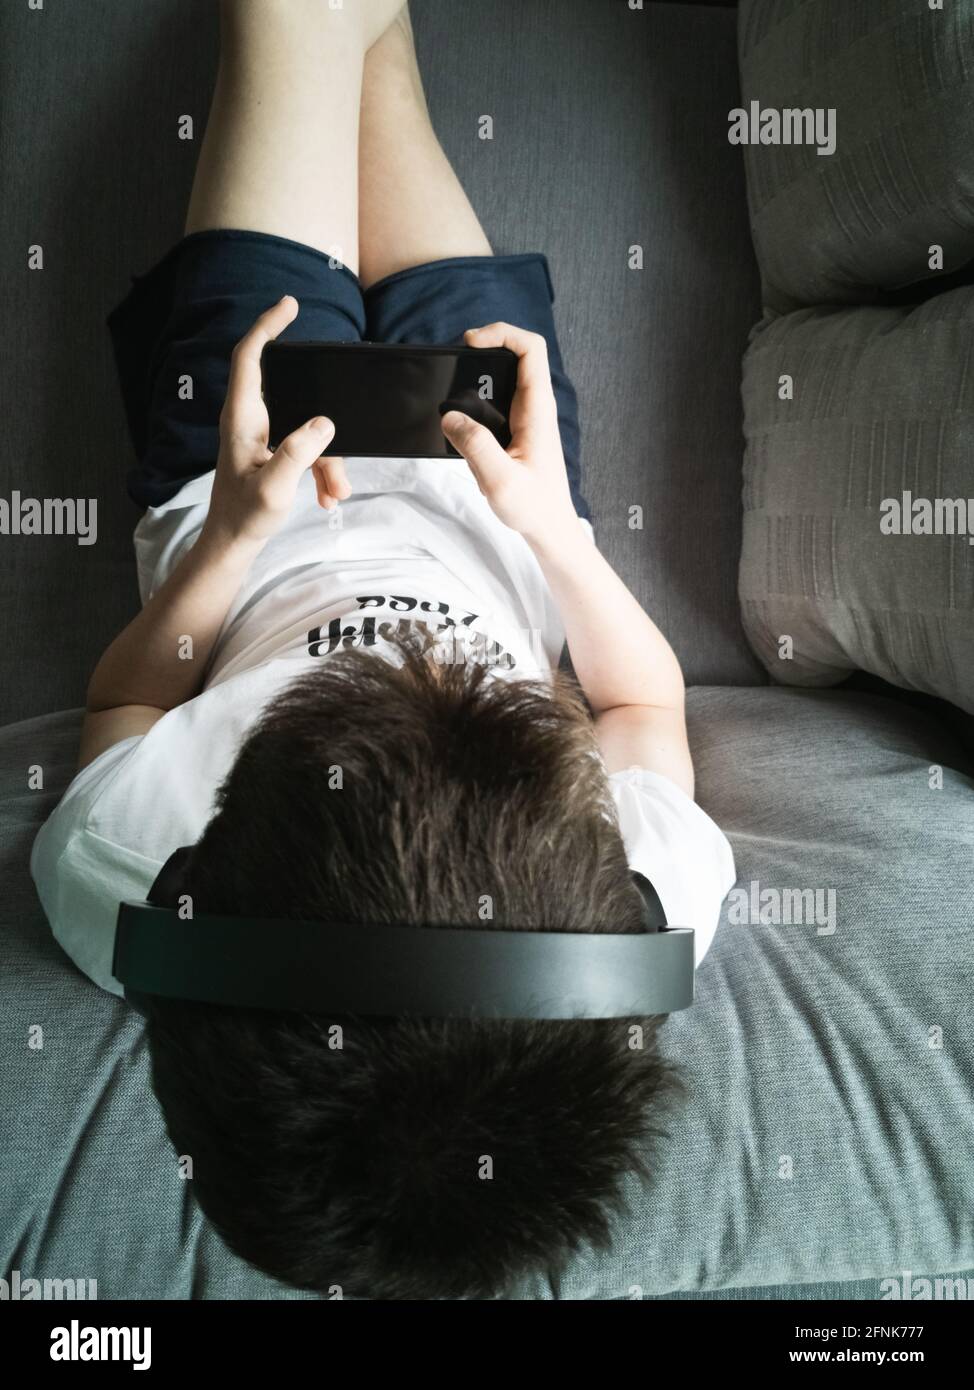 Junge 15 Jahre alt sitzt auf dem Sofa in Kopfhörer Mit einem Smartphone Stockfoto